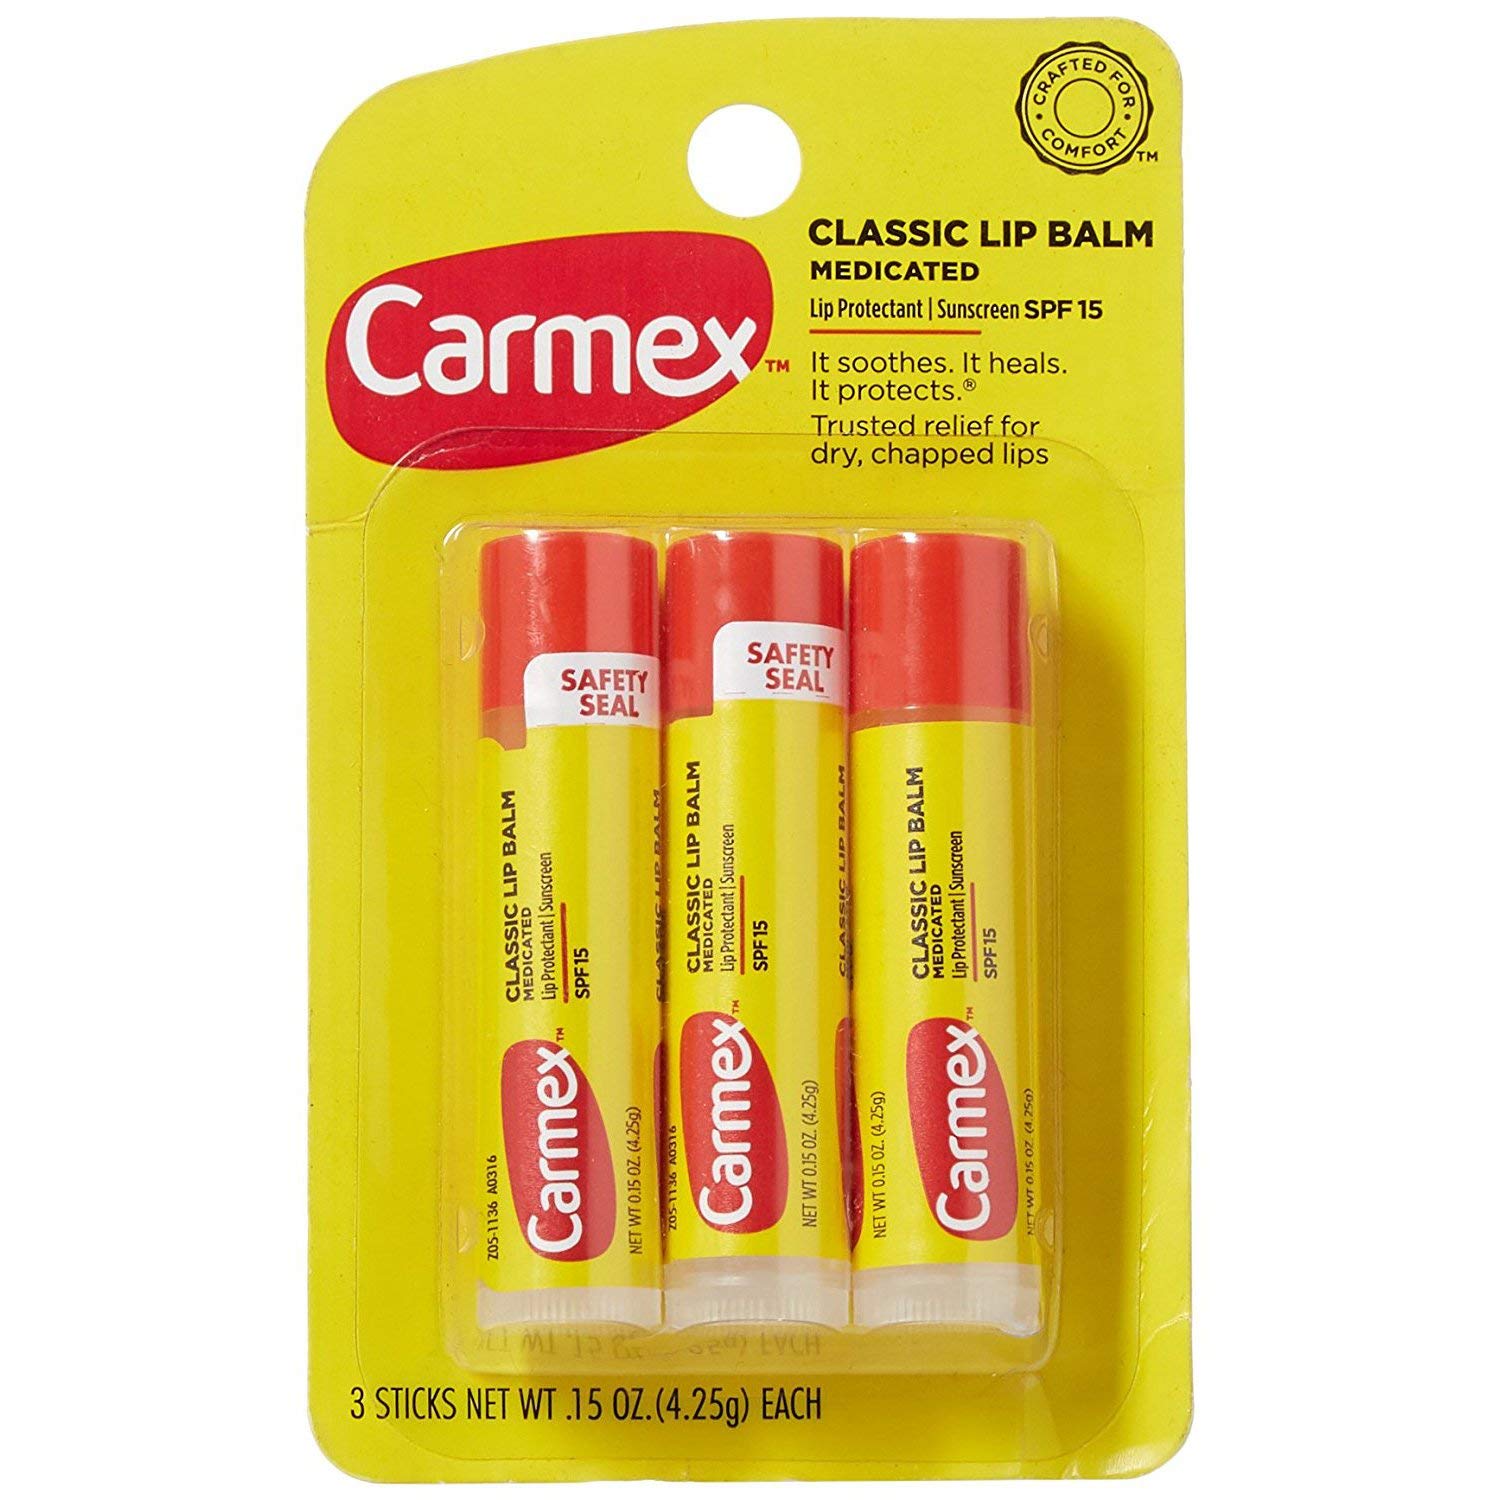 Son dưỡng môi Carmex Classic Lip Balm dạng thỏi 